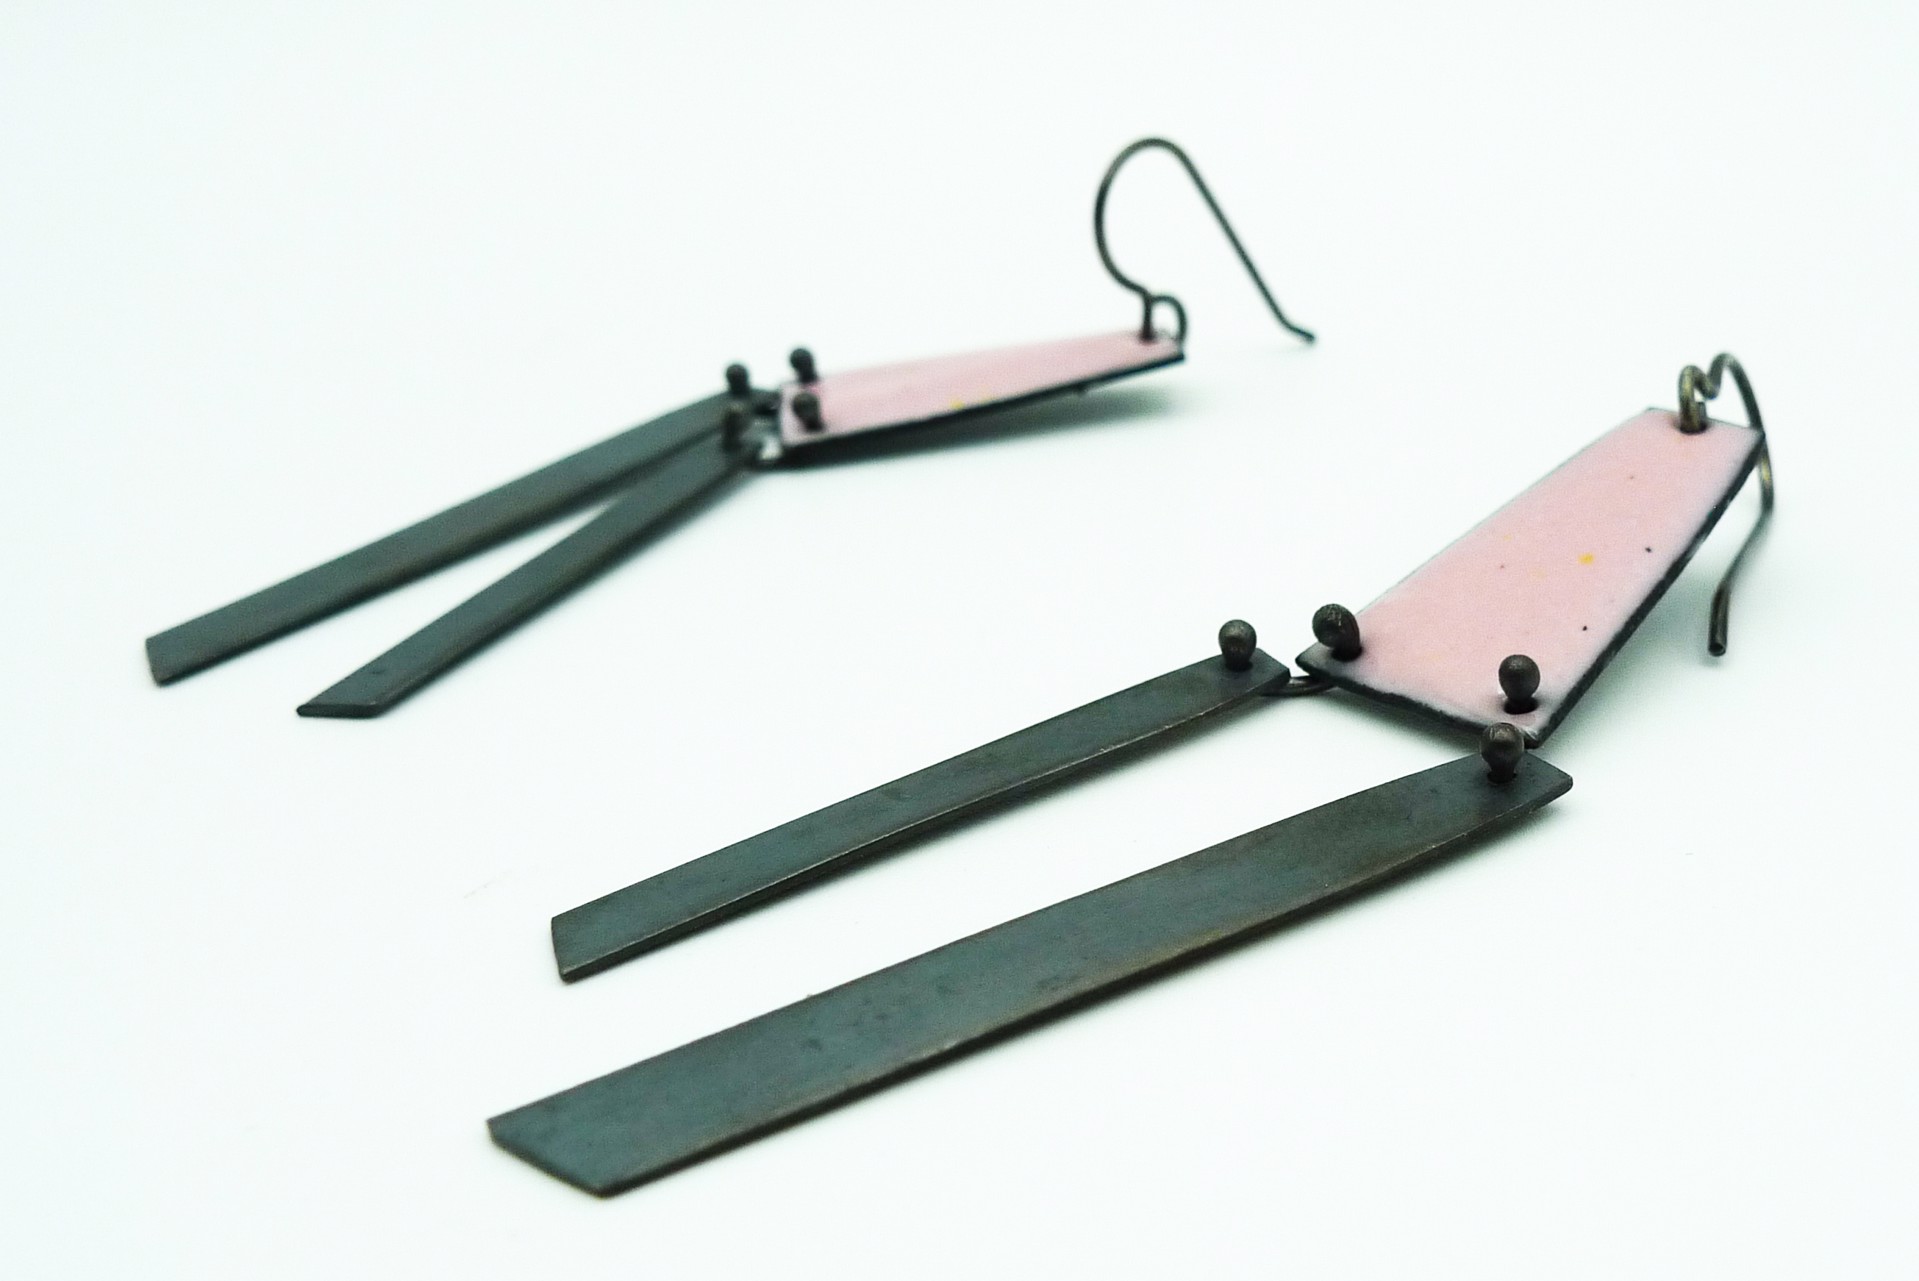 Pink/Oxidized Dangle Earrings by Lauren Markley